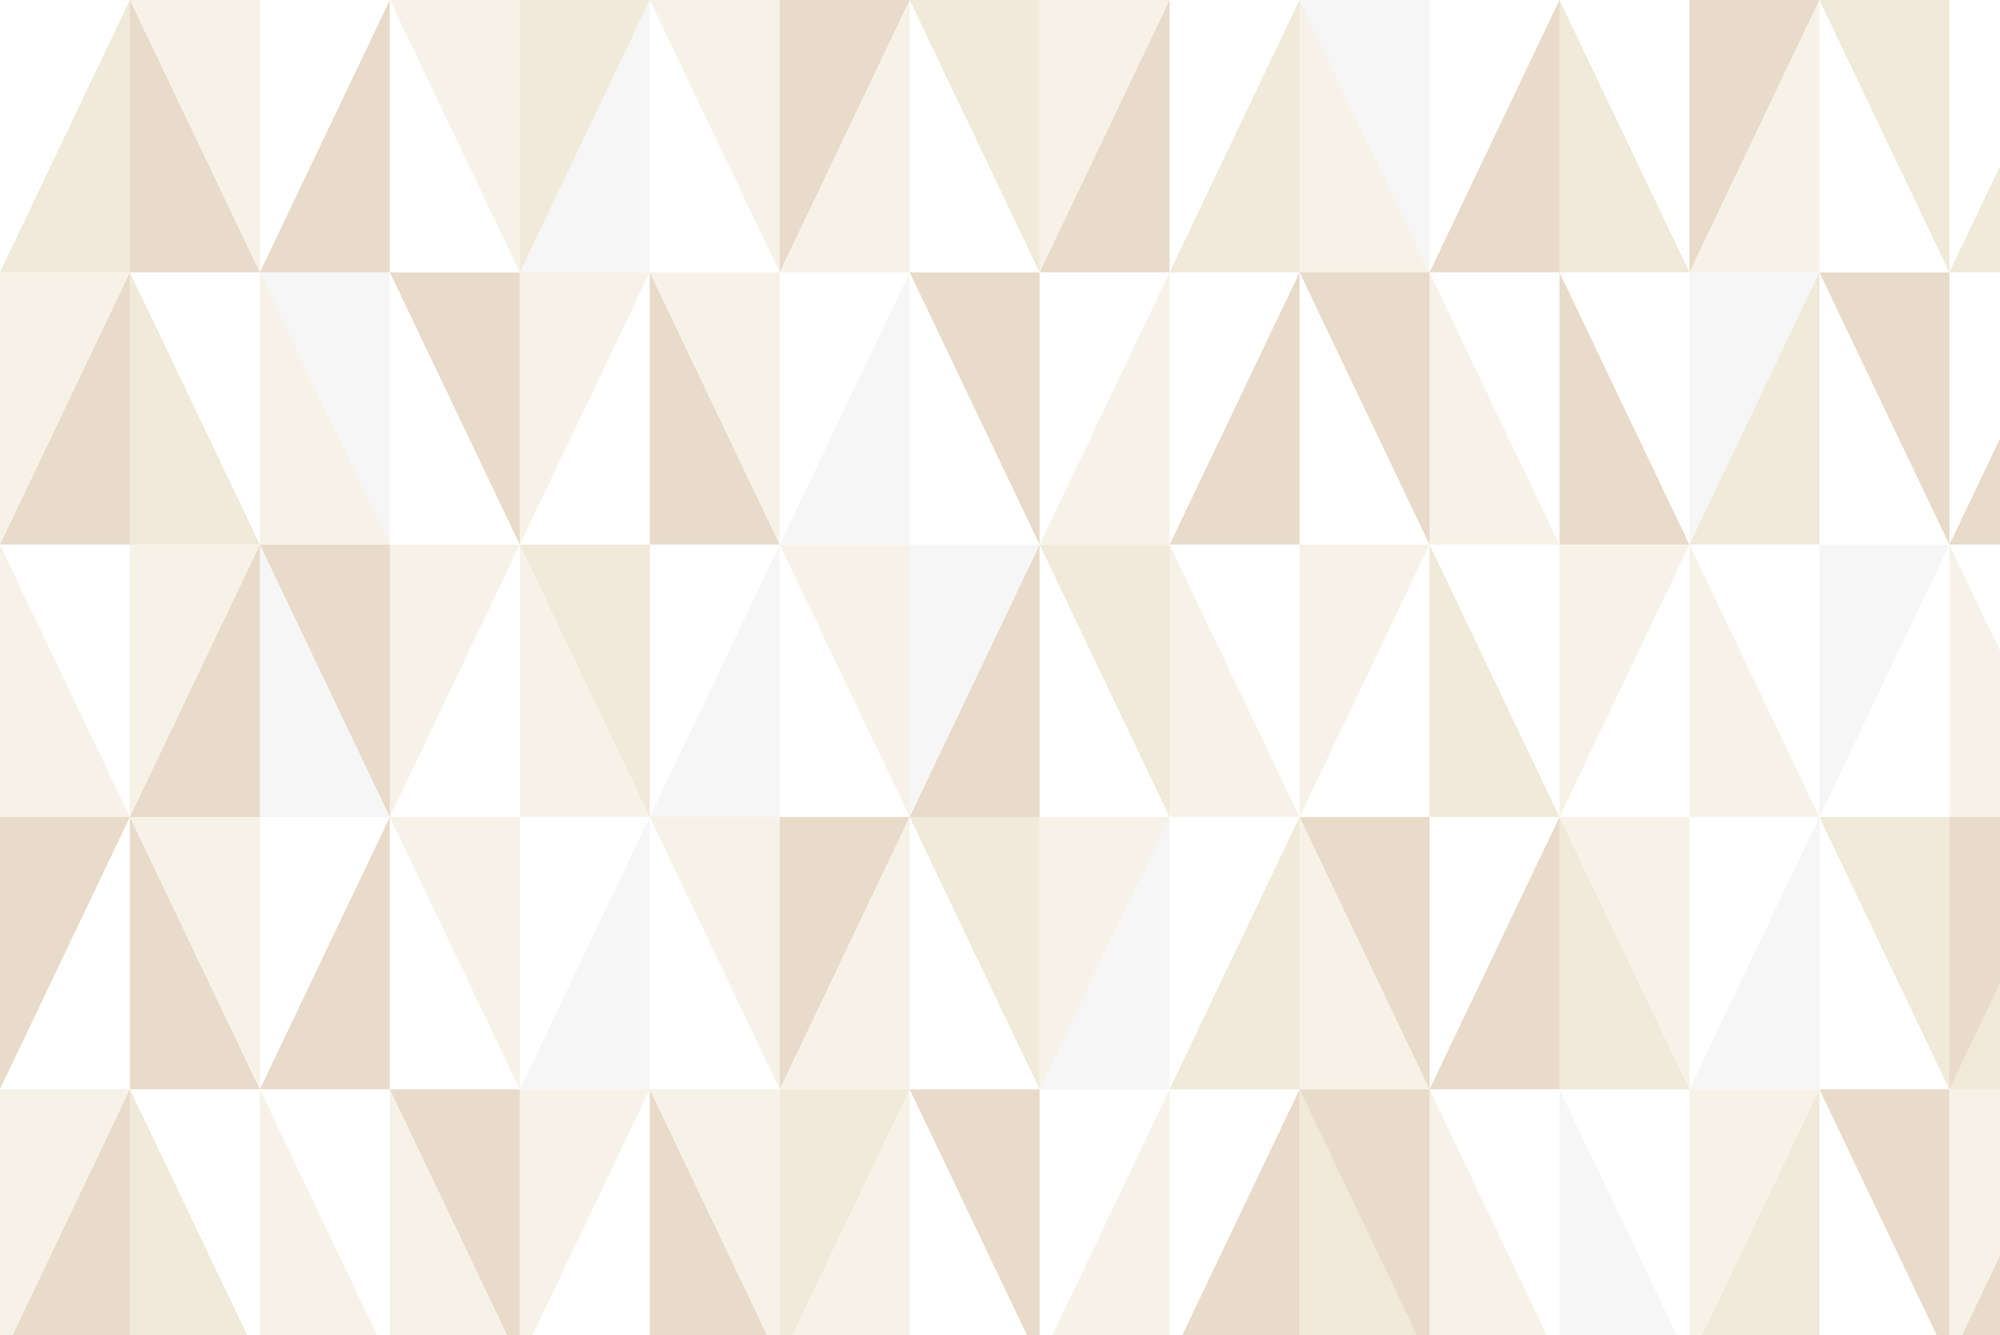             Papel pintado de diseño con pequeños triángulos beige sobre vellón liso nacarado
        